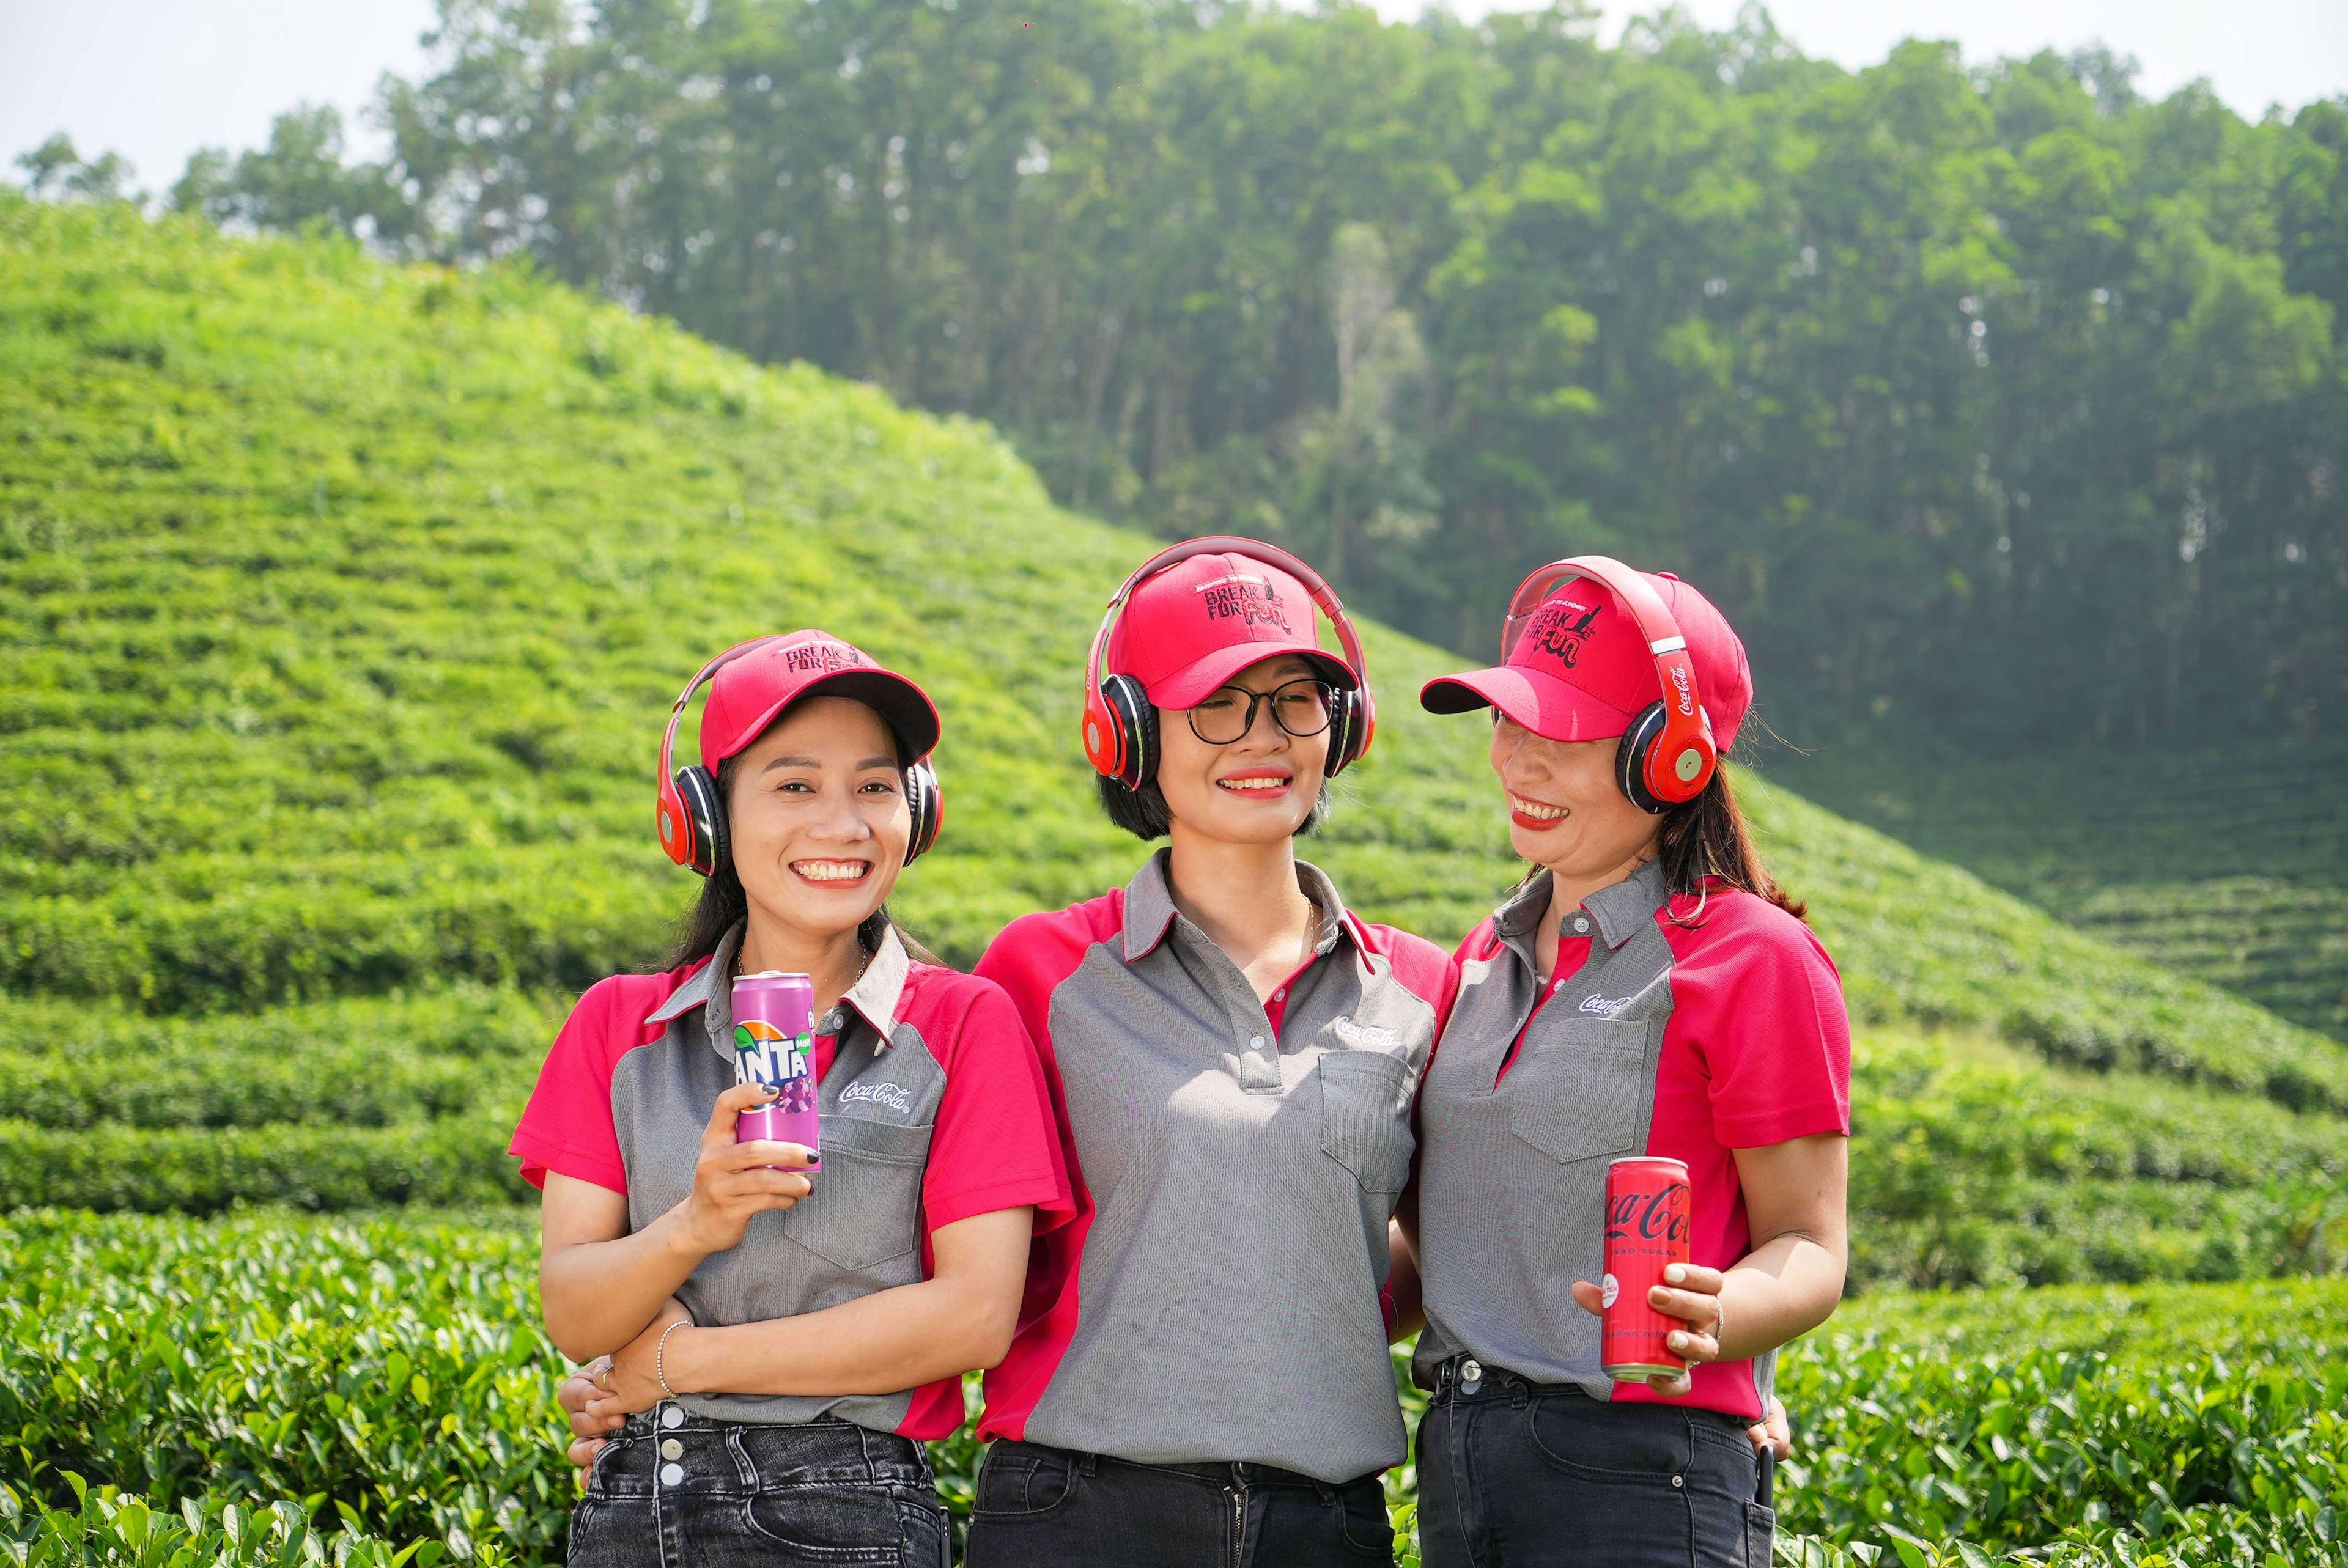 Coca-Cola Beverages Vietnam tuyển dụng - Tìm việc mới nhất, lương thưởng hấp dẫn.